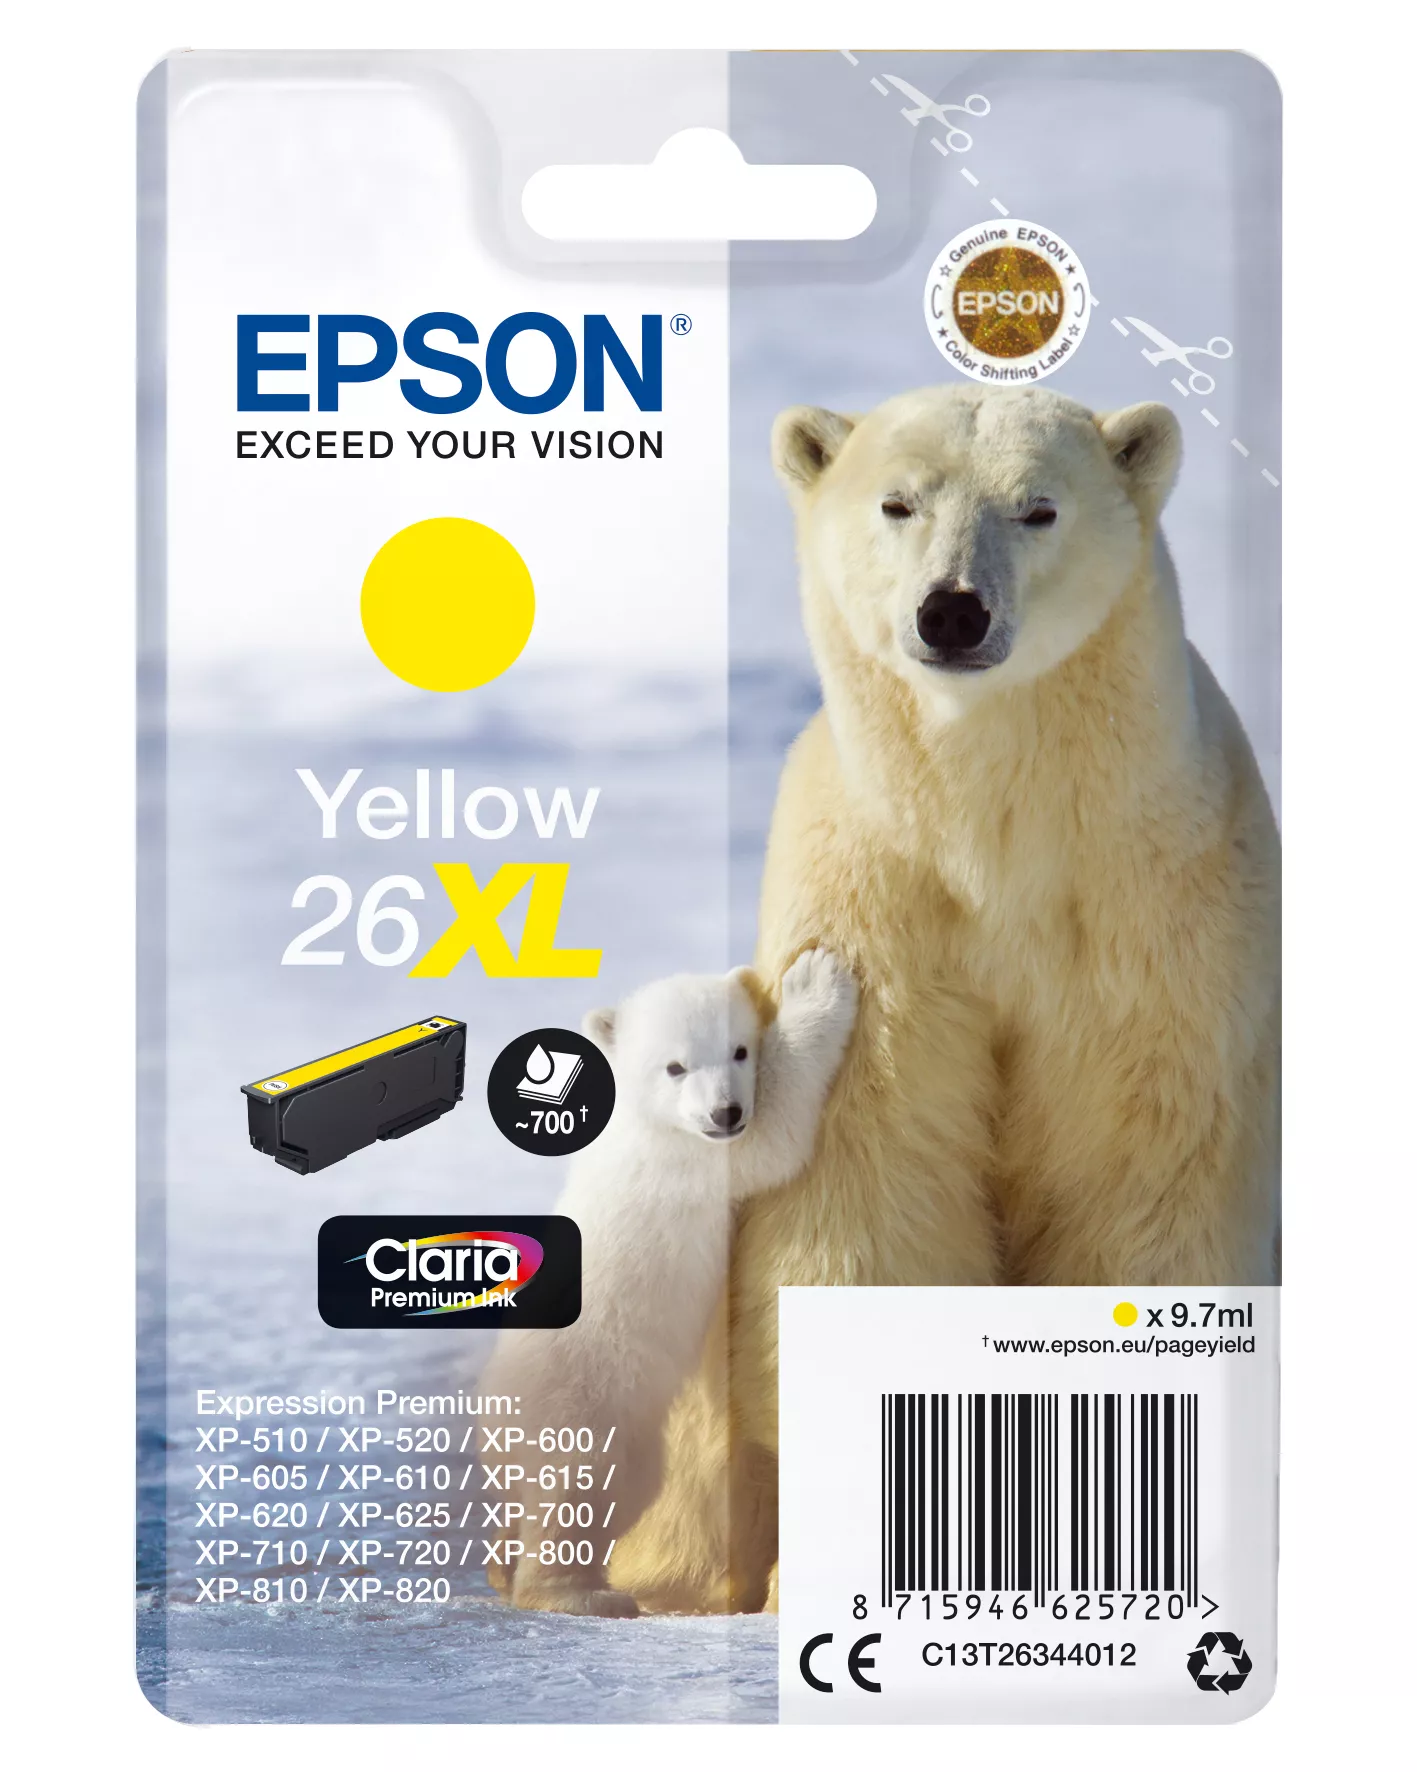 Vente EPSON 26XL cartouche dencre jaune haute capacité 9.7ml au meilleur prix